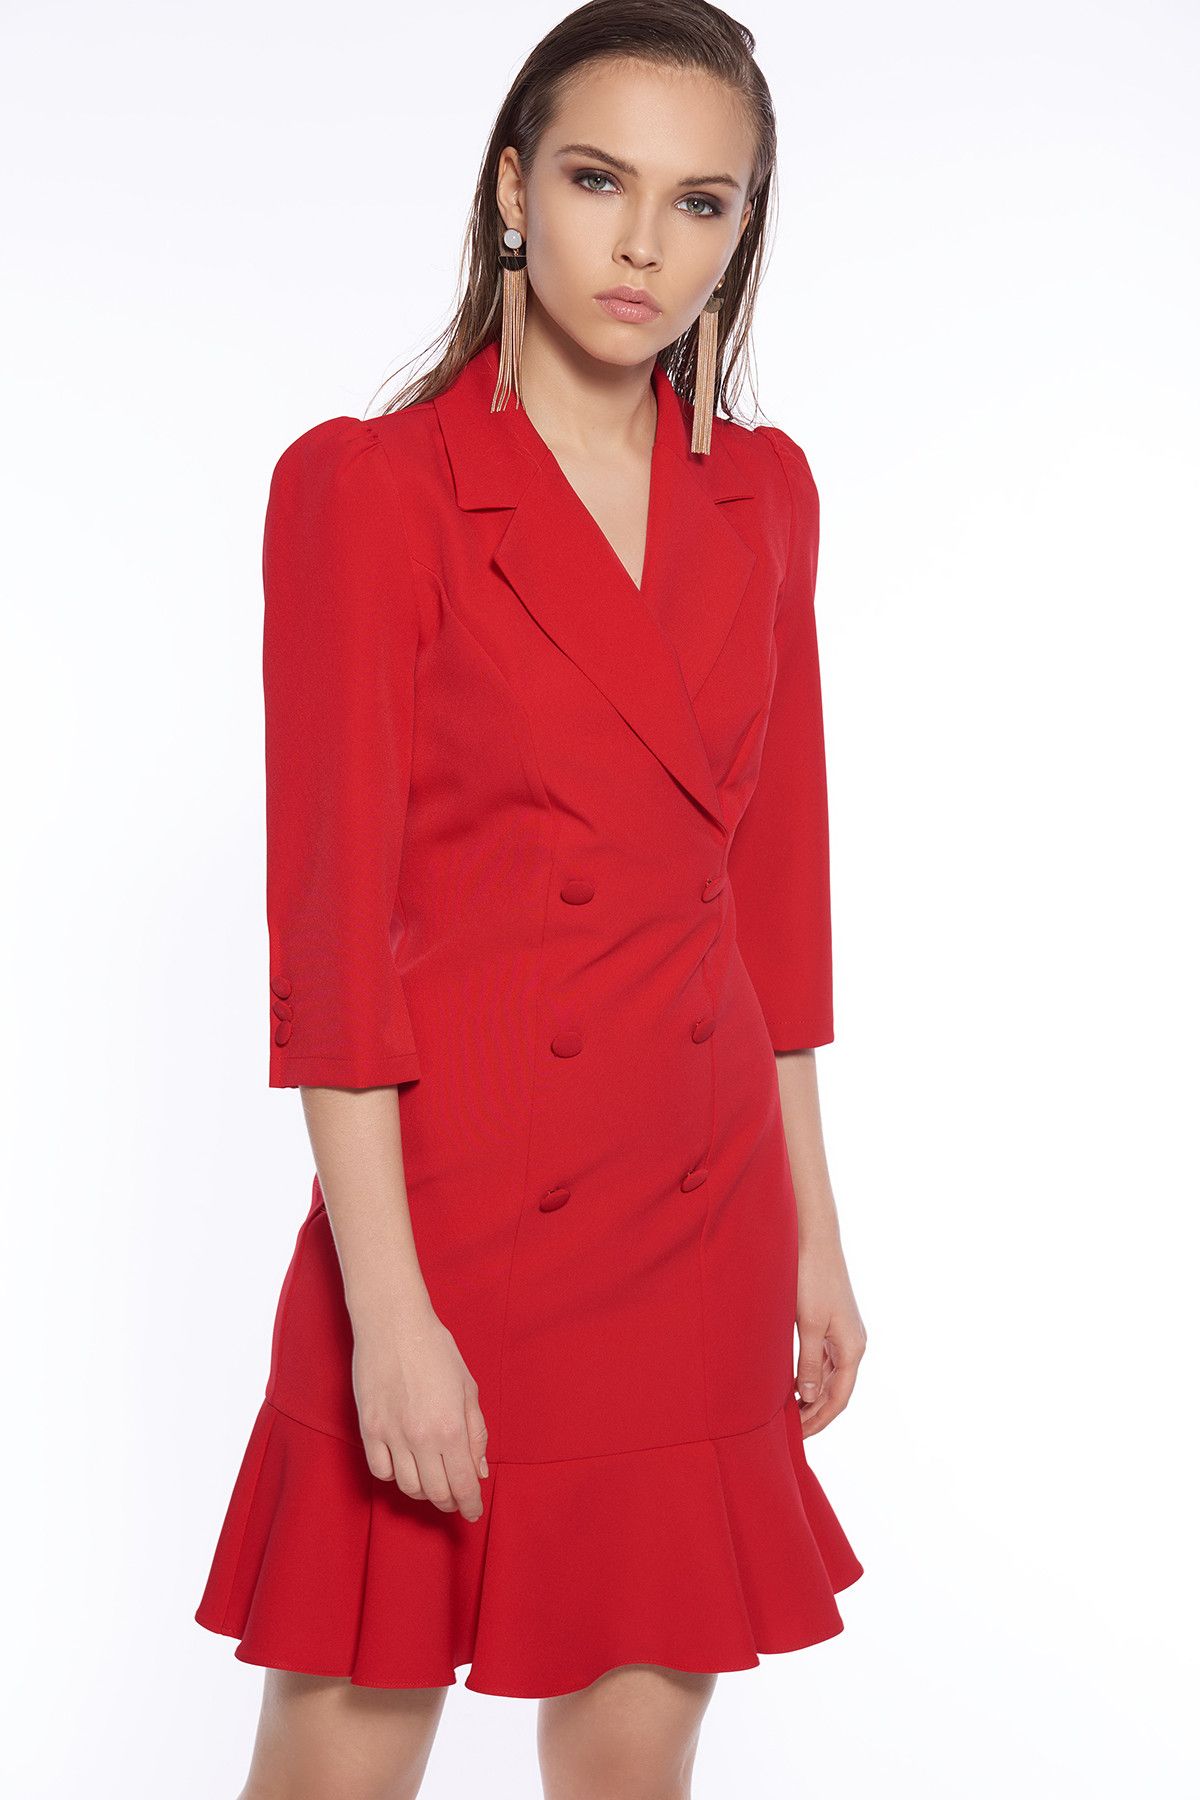 İroni Kadın Kırmızı Volanlı Blazer Elbise 5131-891A